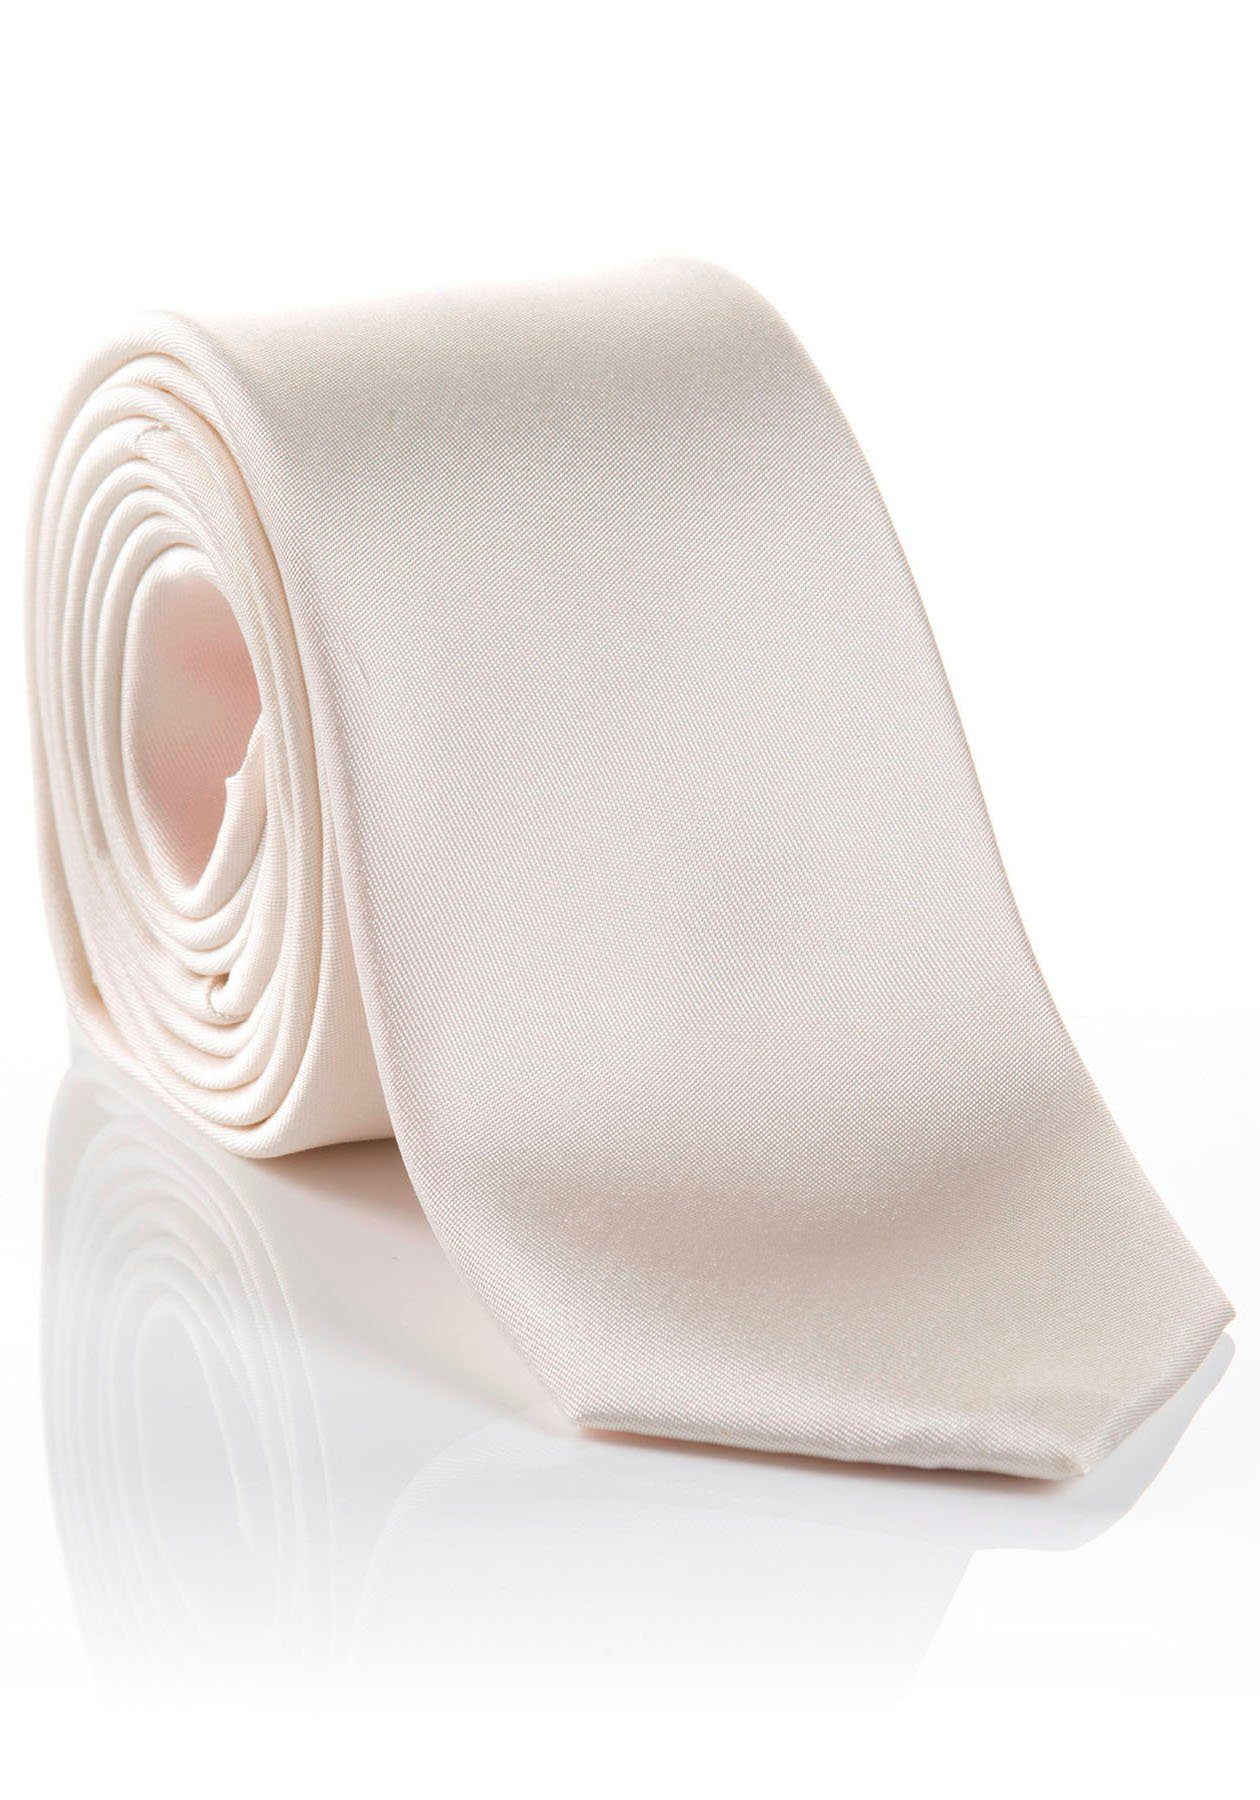 MONTI Krawatte LIVIO mit verarbeitete Hochwertig Tragekomfort Seidenkrawatte hohem